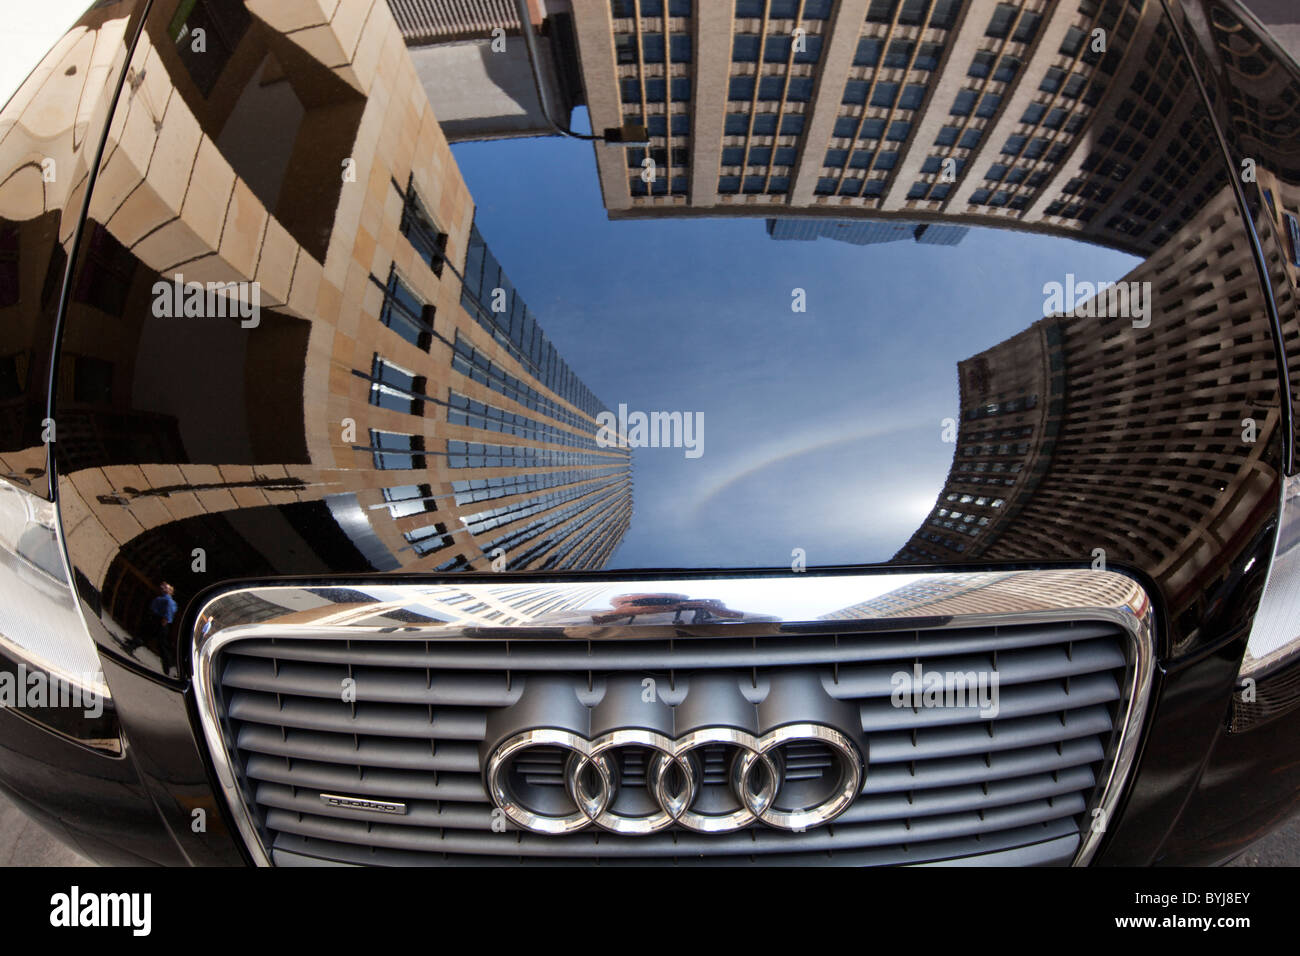 Estados Unidos, Minnesota, Minneapolis, reflejo del edificio de oficinas en el capó del coche de Audi Foto de stock